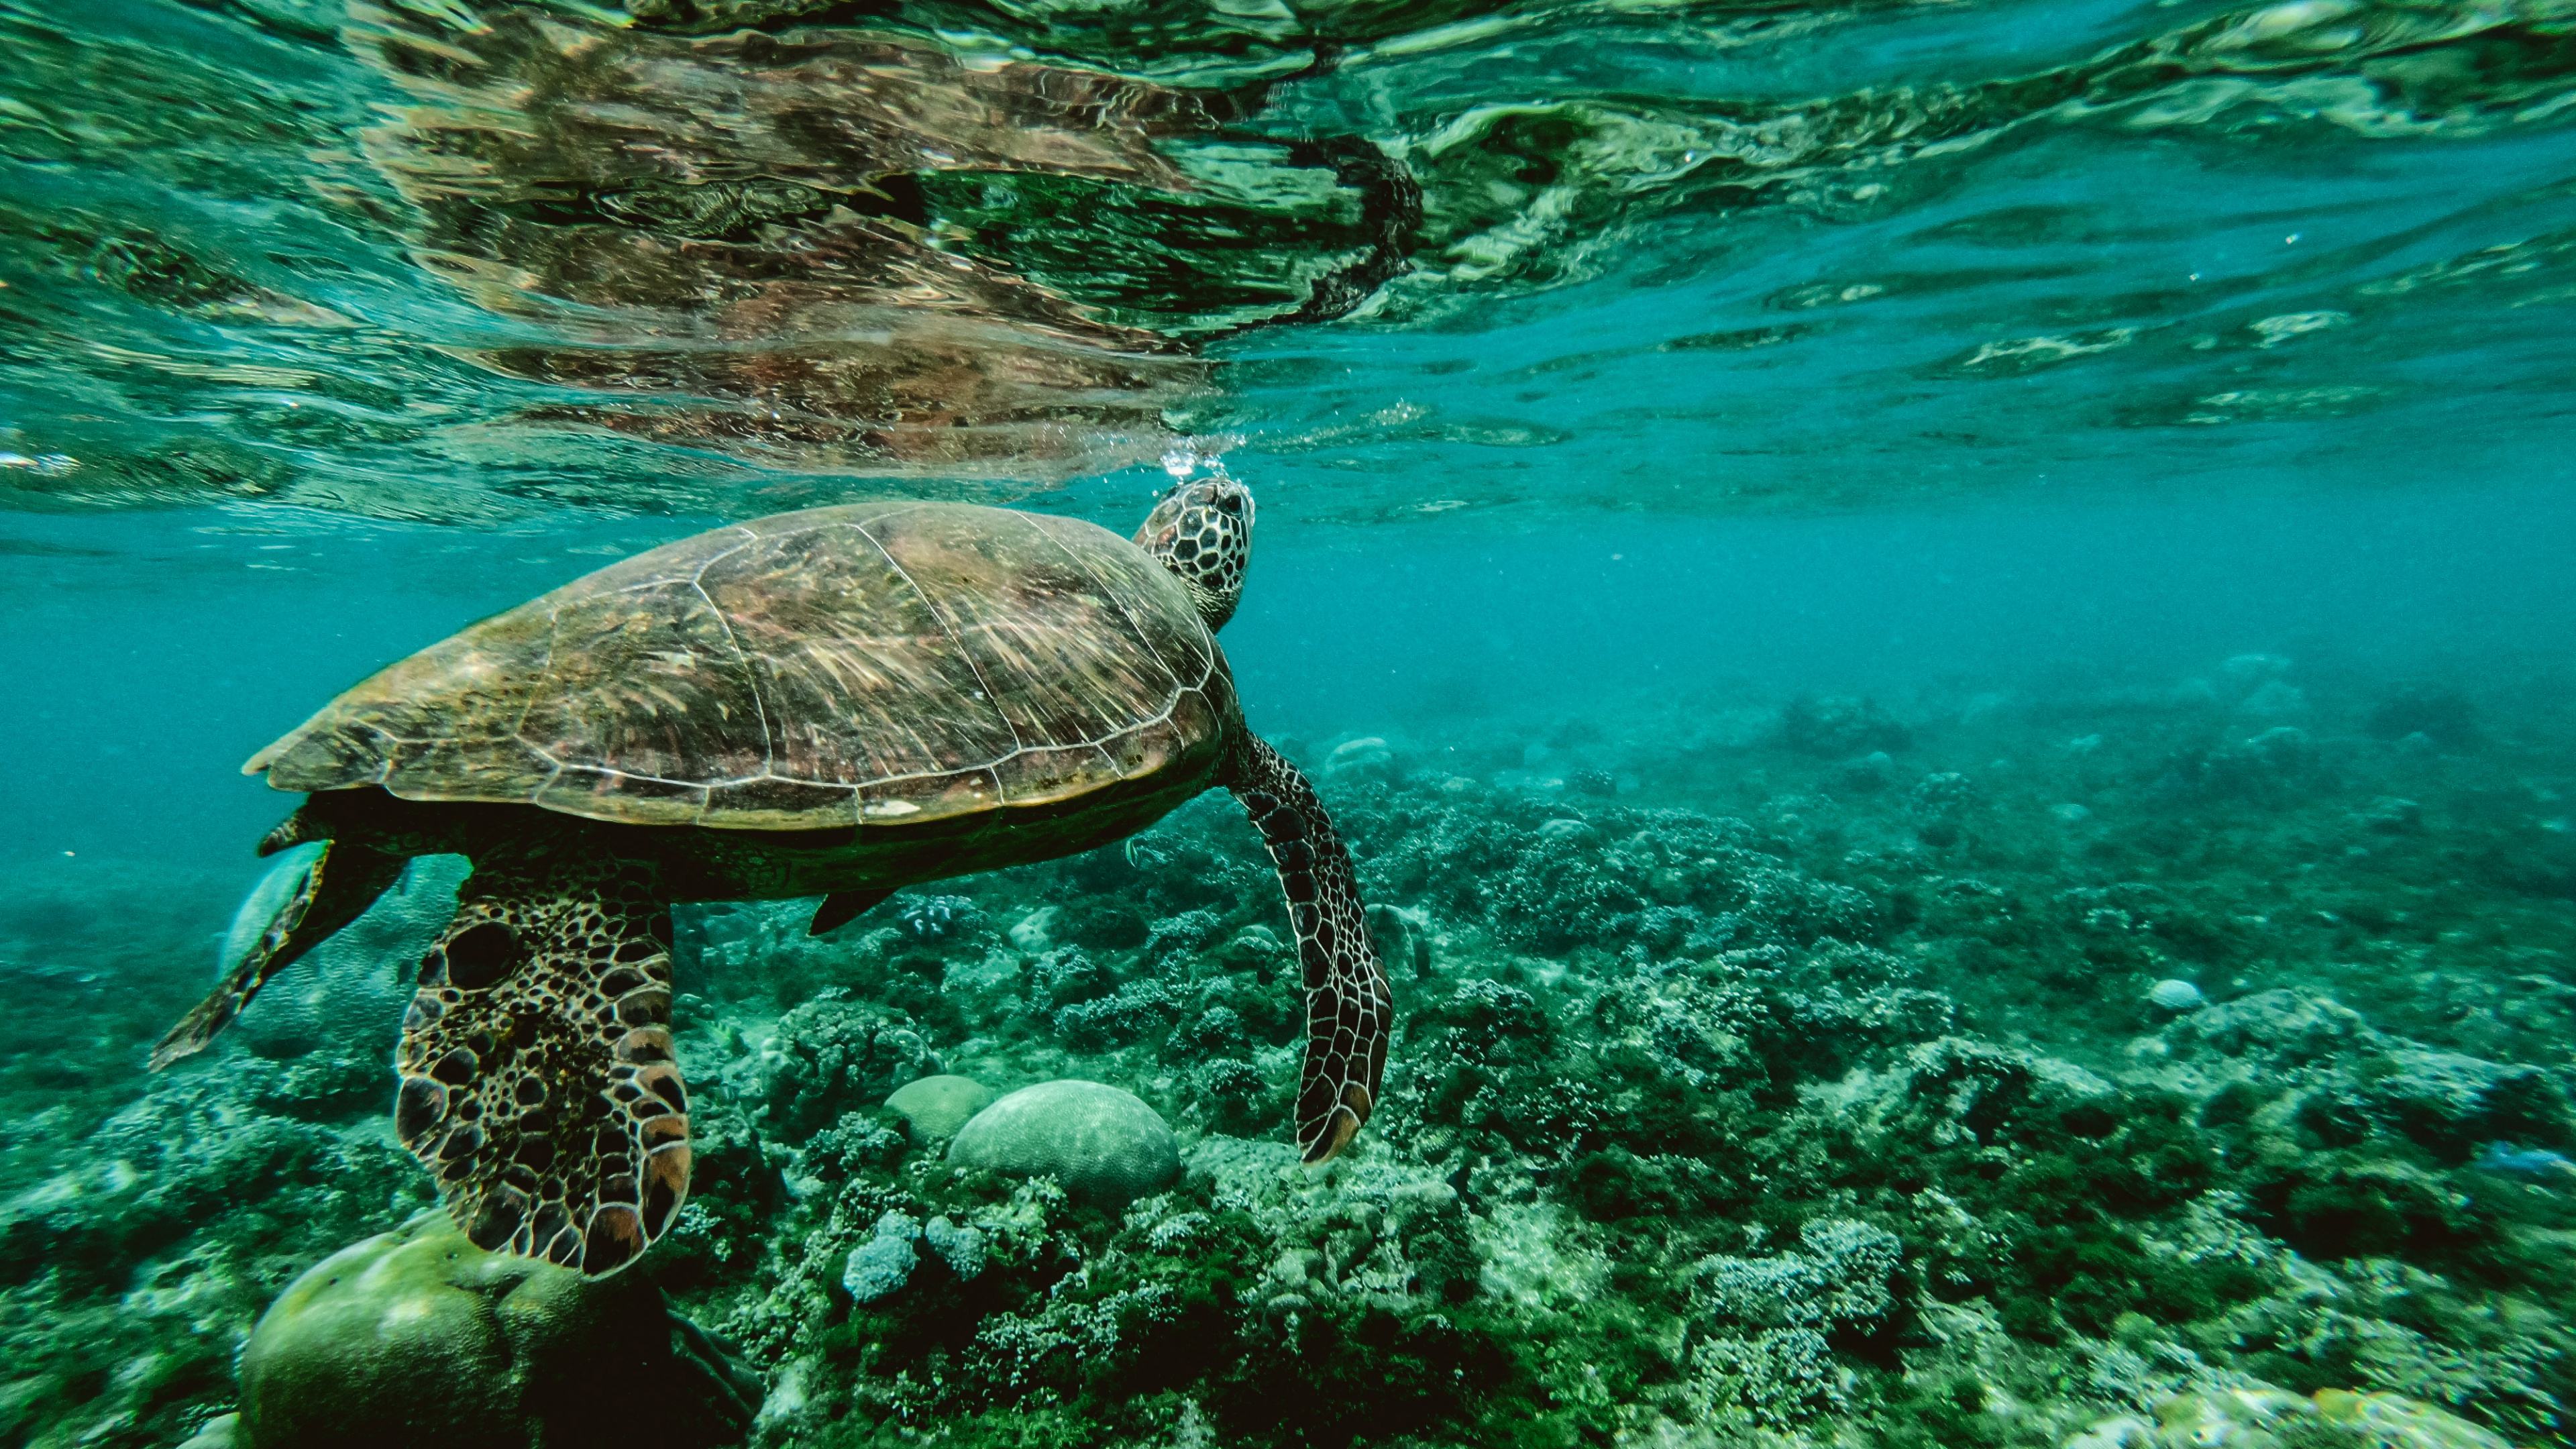 乌龟, 大海, S海龟, 水下, 海洋生物学 壁纸 3840x2160 允许